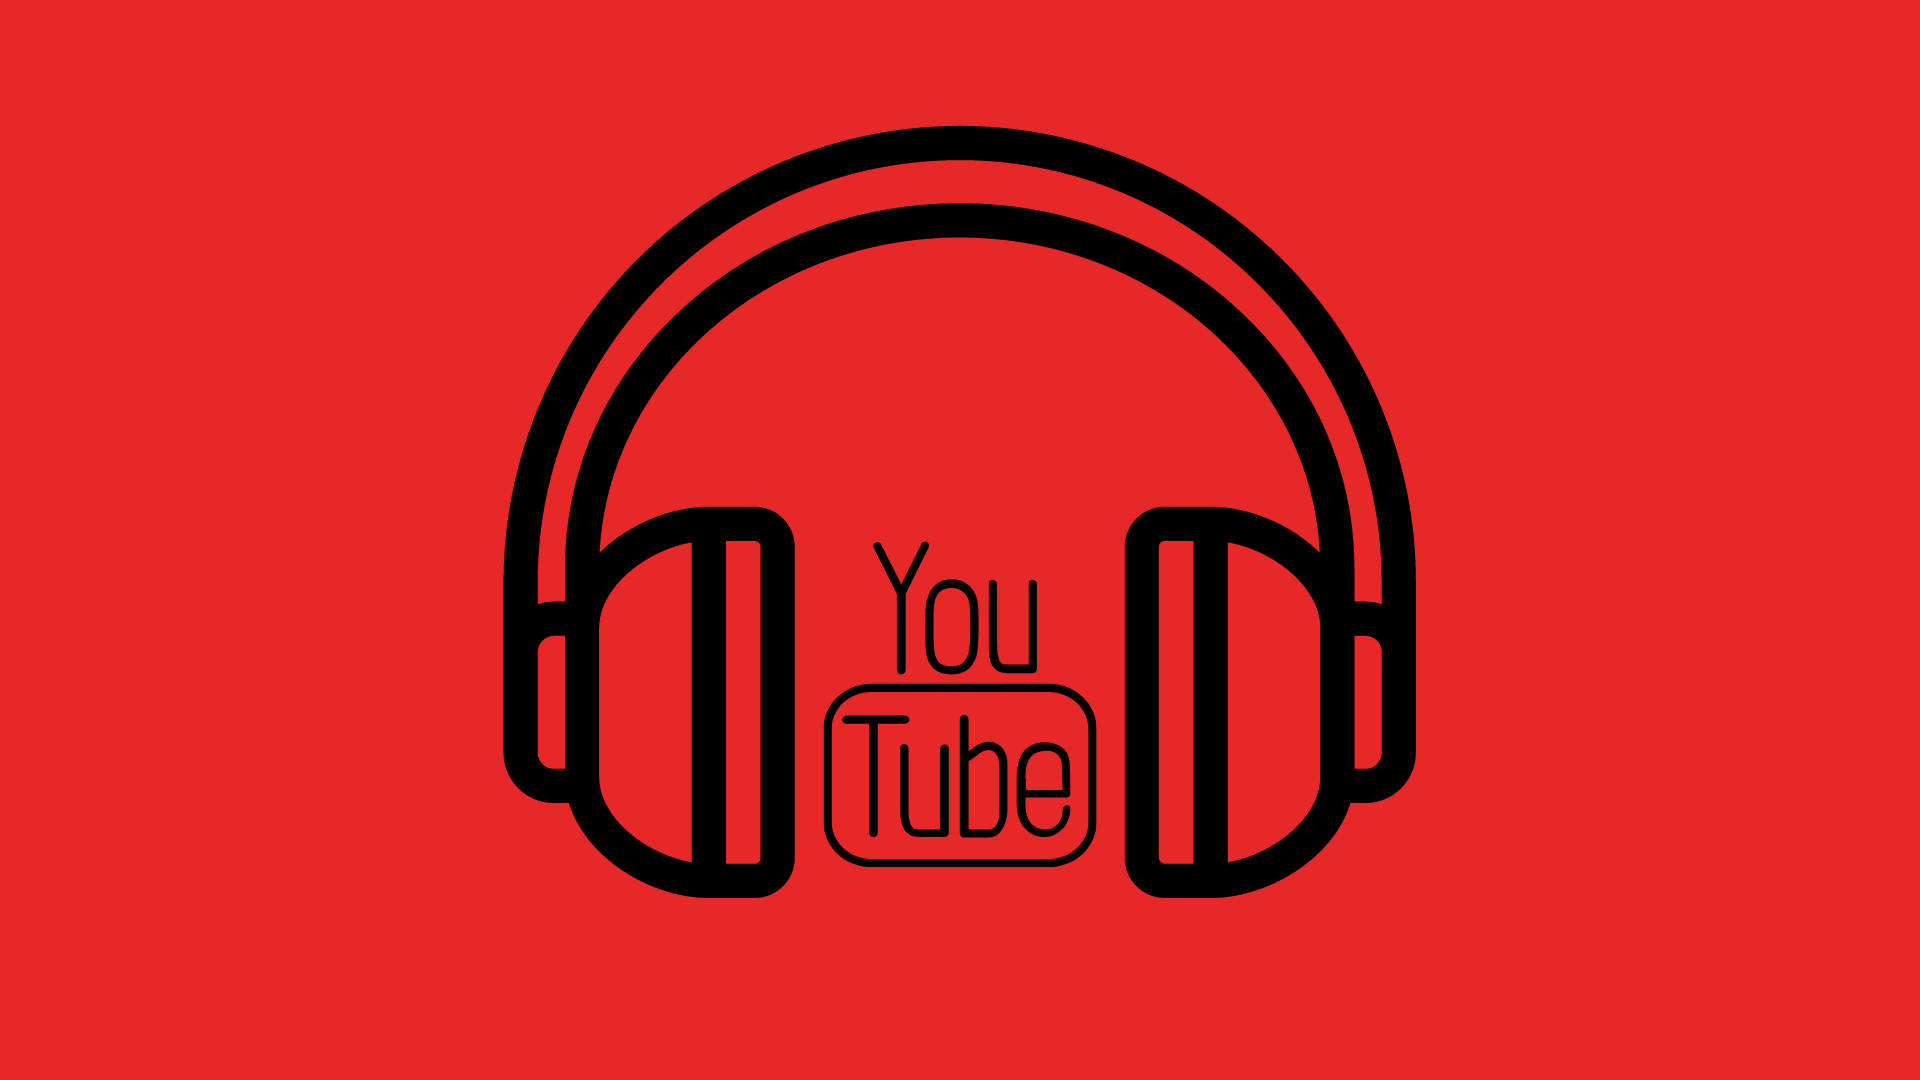 Logotipode Youtube Entre Auriculares. Fondo de pantalla